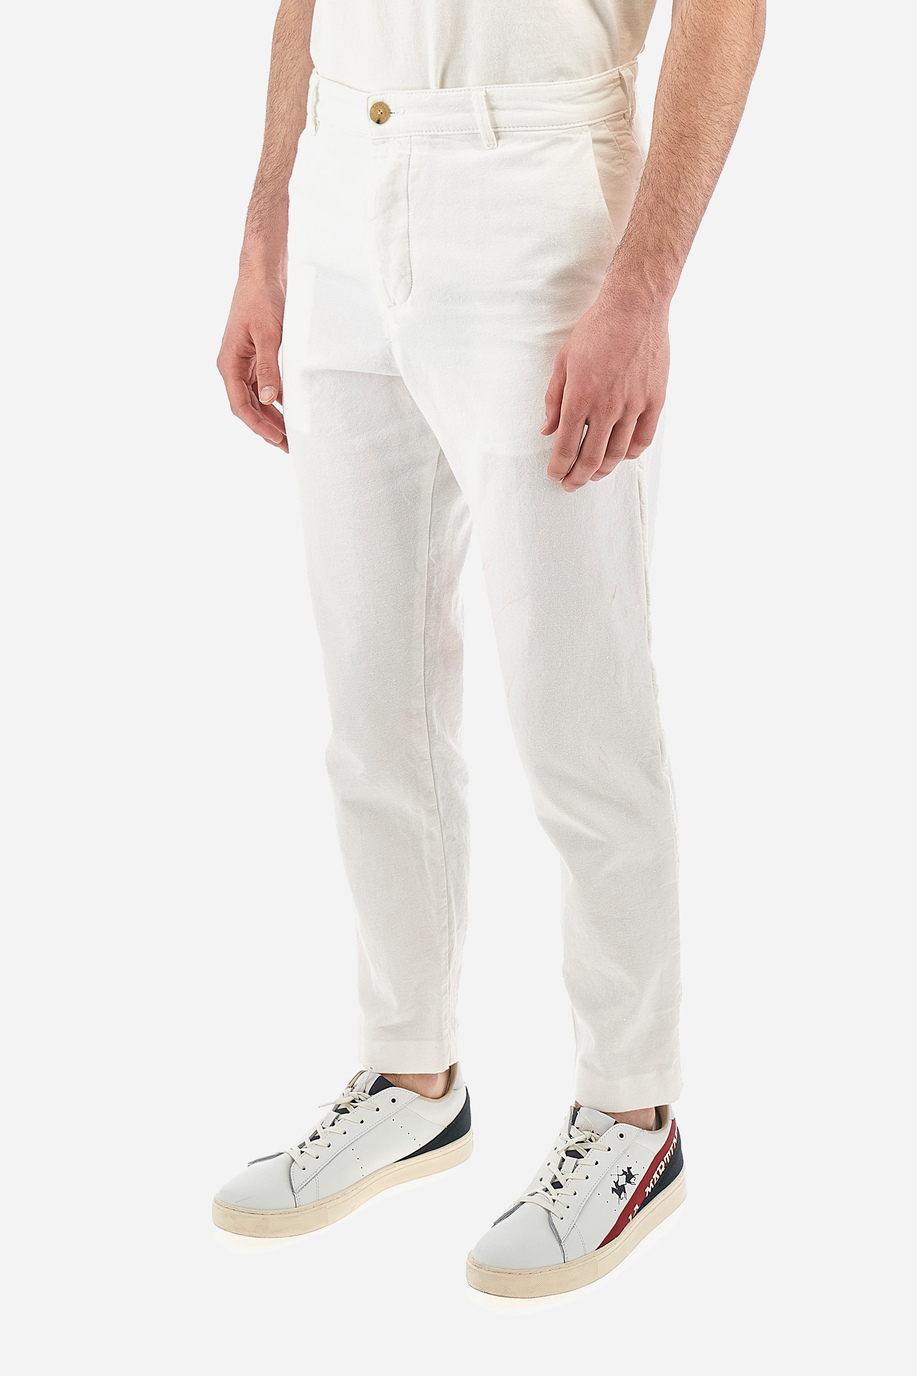 Men's regular fit trousers - Vance - Gerard Loft X La Martina | La Martina - Official Online Shop